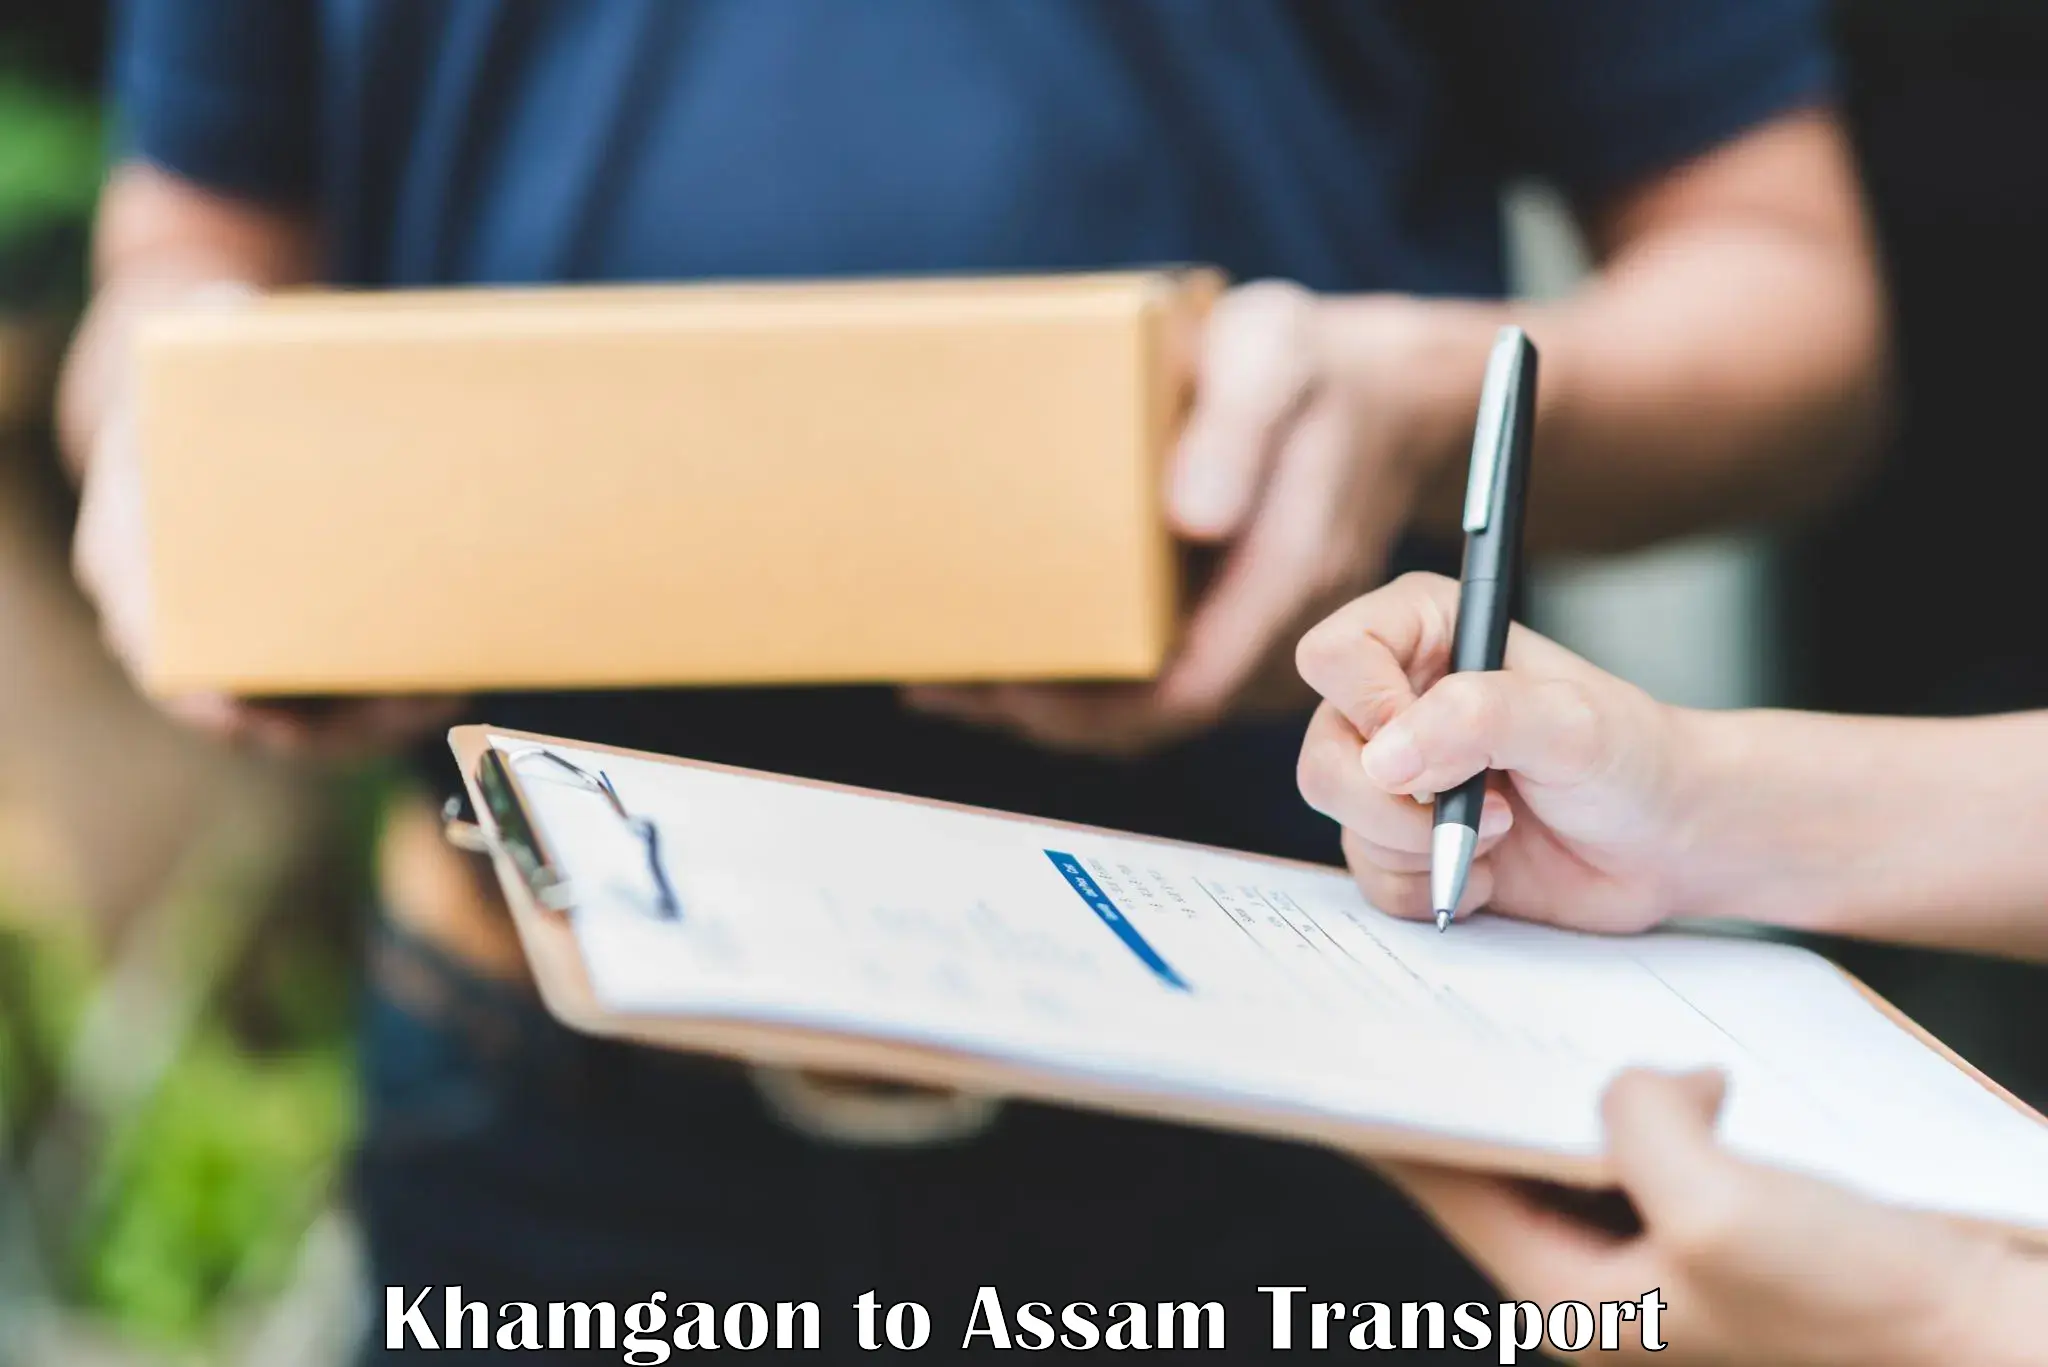 Commercial transport service Khamgaon to Dhakuakhana